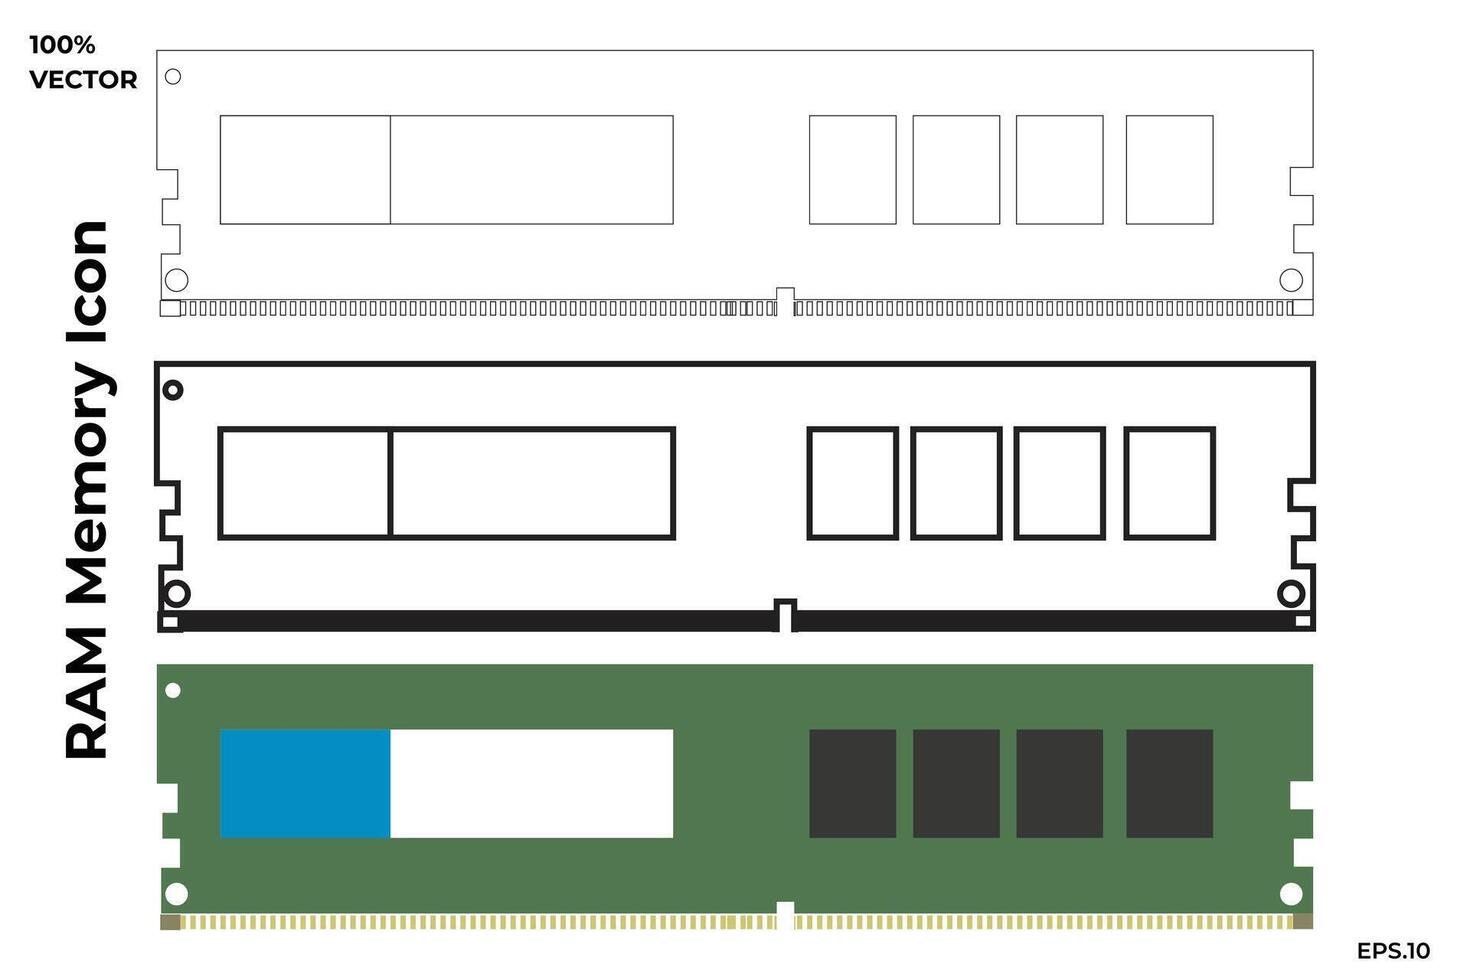 RAM memória ícone. conjunto do vetor ilustrações dentro Preto e branco